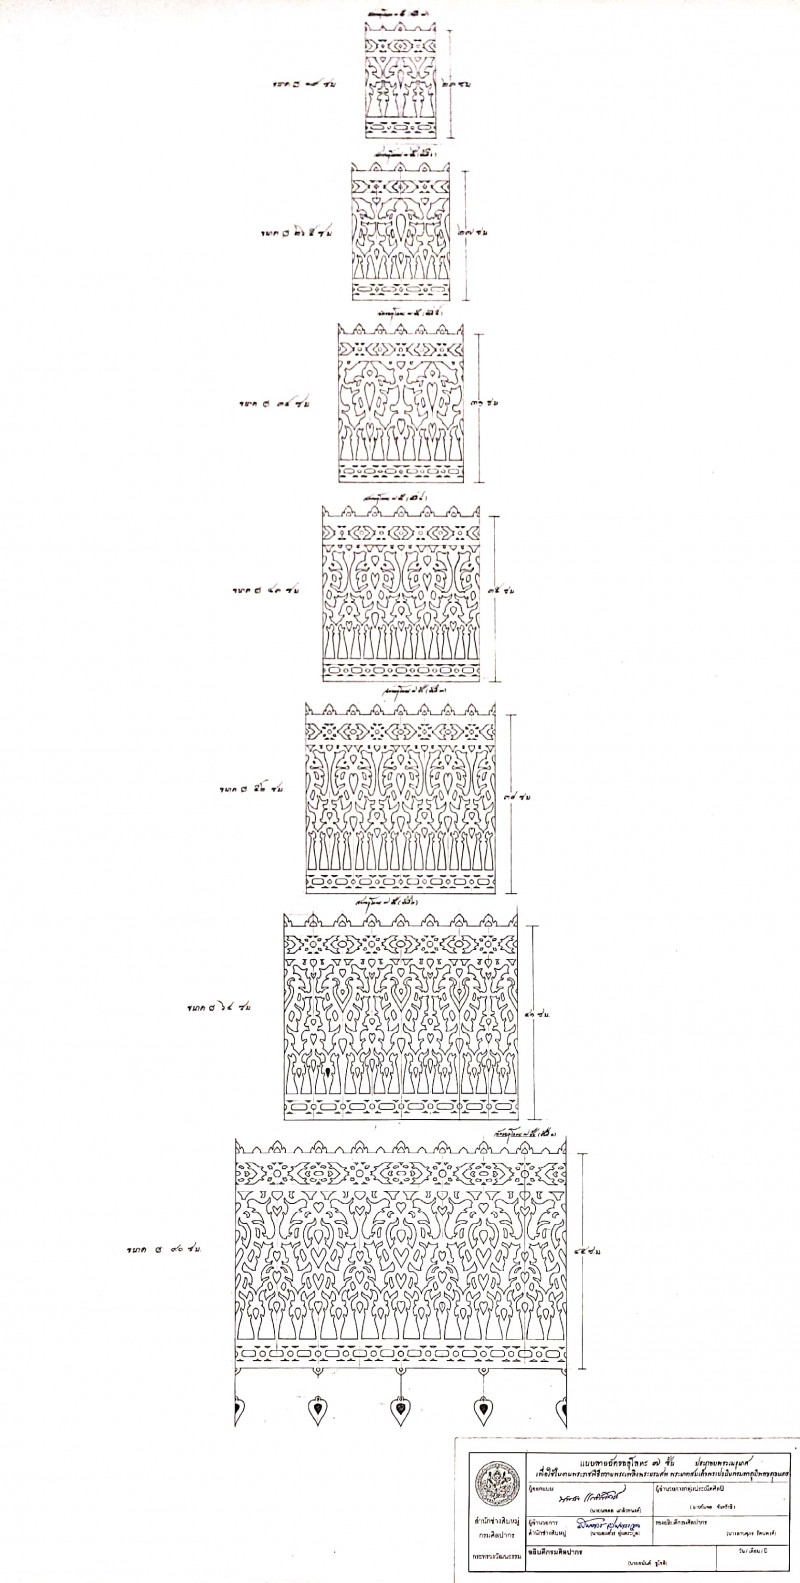 photo-การออกแบบฉัตรฉลุโลหะ ๗ ชั้น  ประกอบพระเมรุมาศ  เพื่อใช้ในงานพระราชพิธีถวายพระเพลิงพระบรมศพ  พระบาทสมเด็จพระปรมินทรมหาภูมิพลอดุลเดช